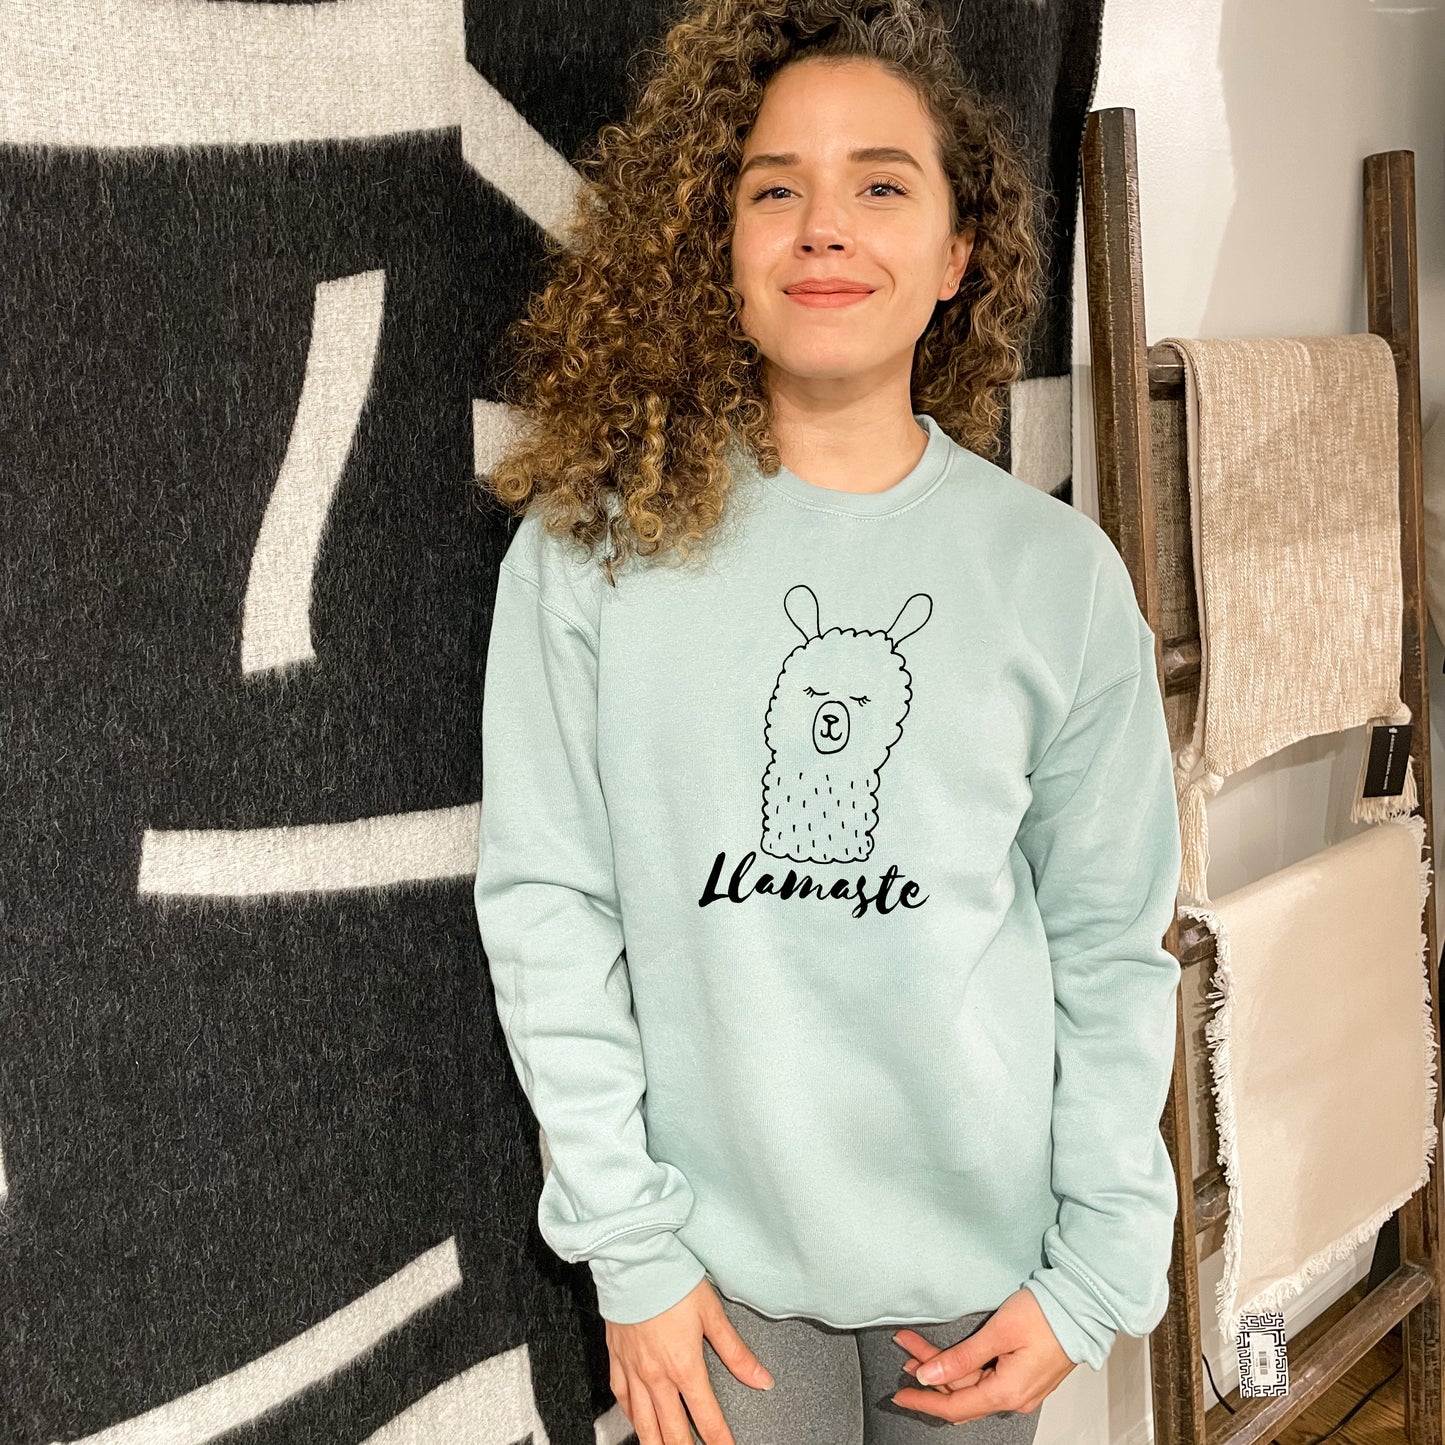 Llamaste (Llama/ Yoga) - Unisex Sweatshirt - Heather Gray or Dusty Blue